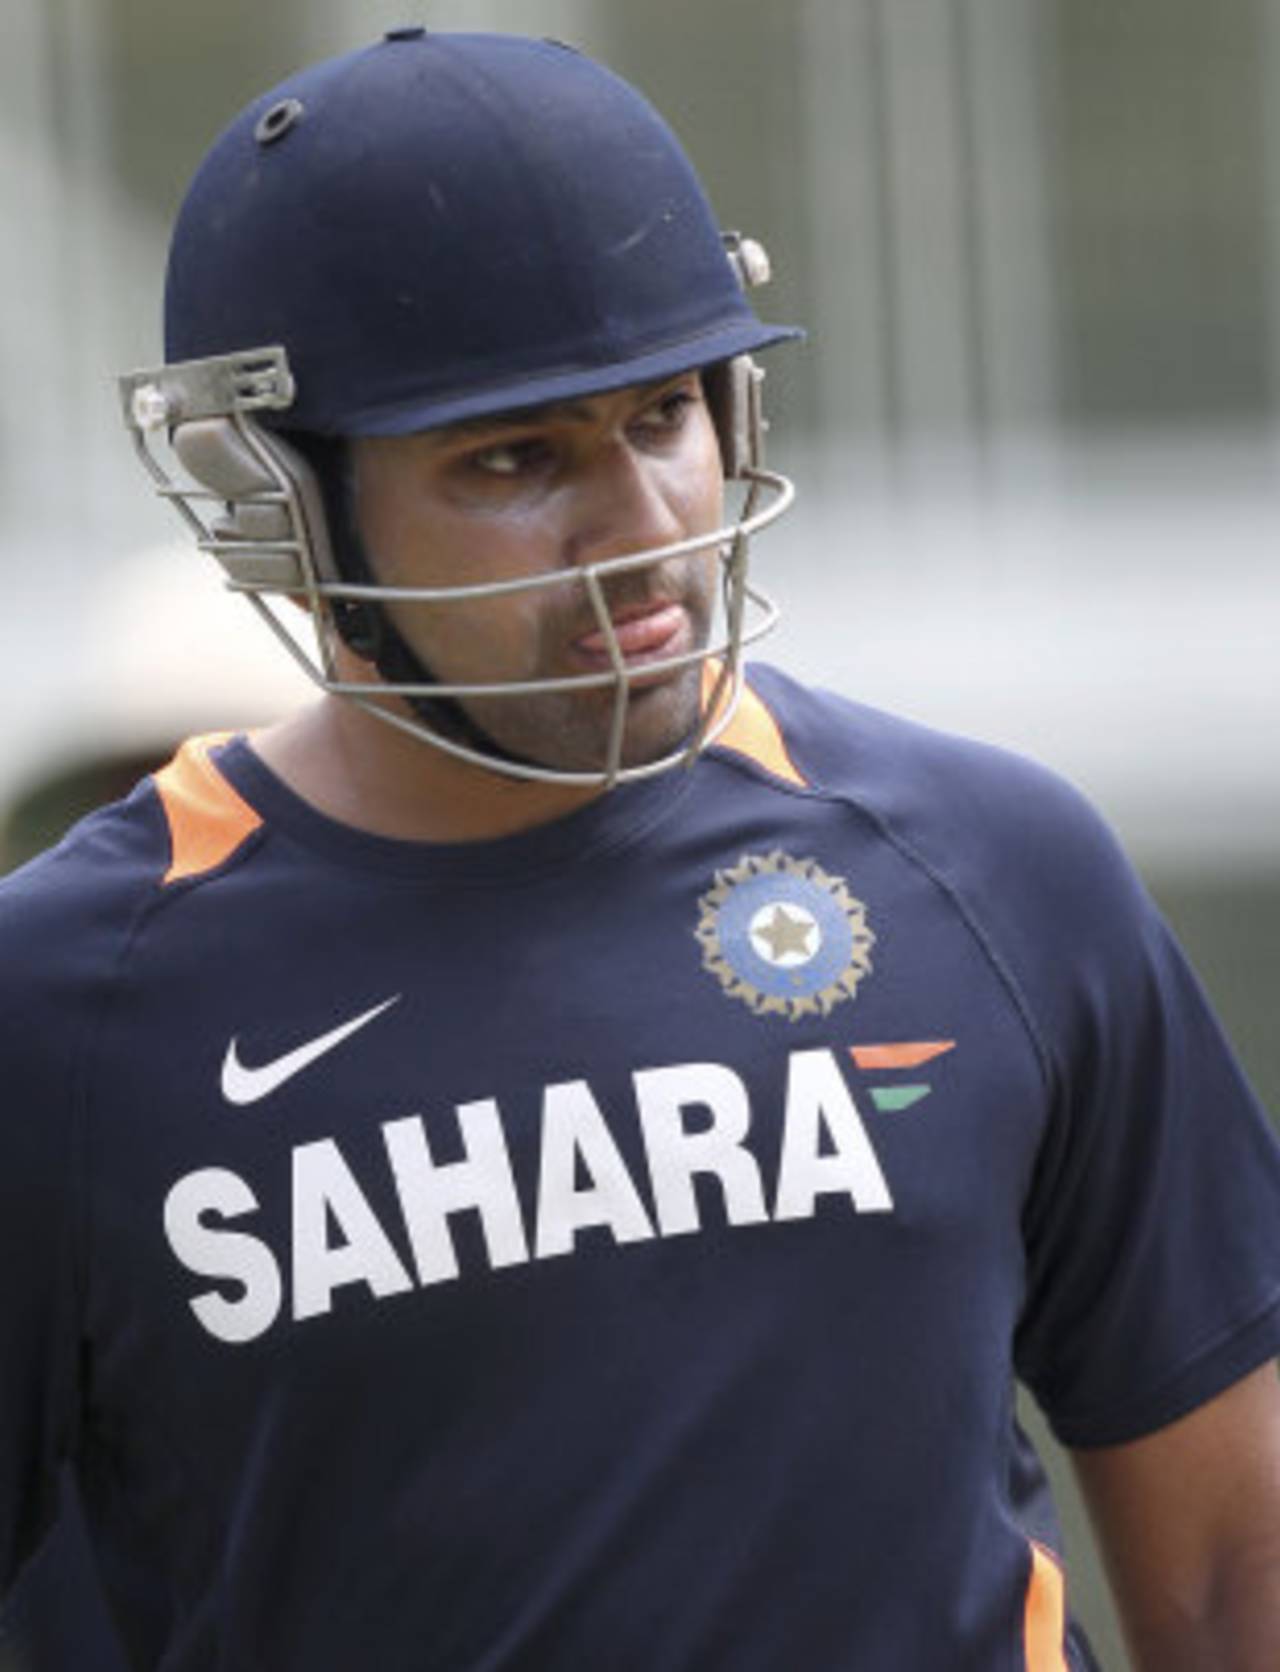 Rohit Sharma gets ready to bat at the nets, Sydney, January 31, 2012